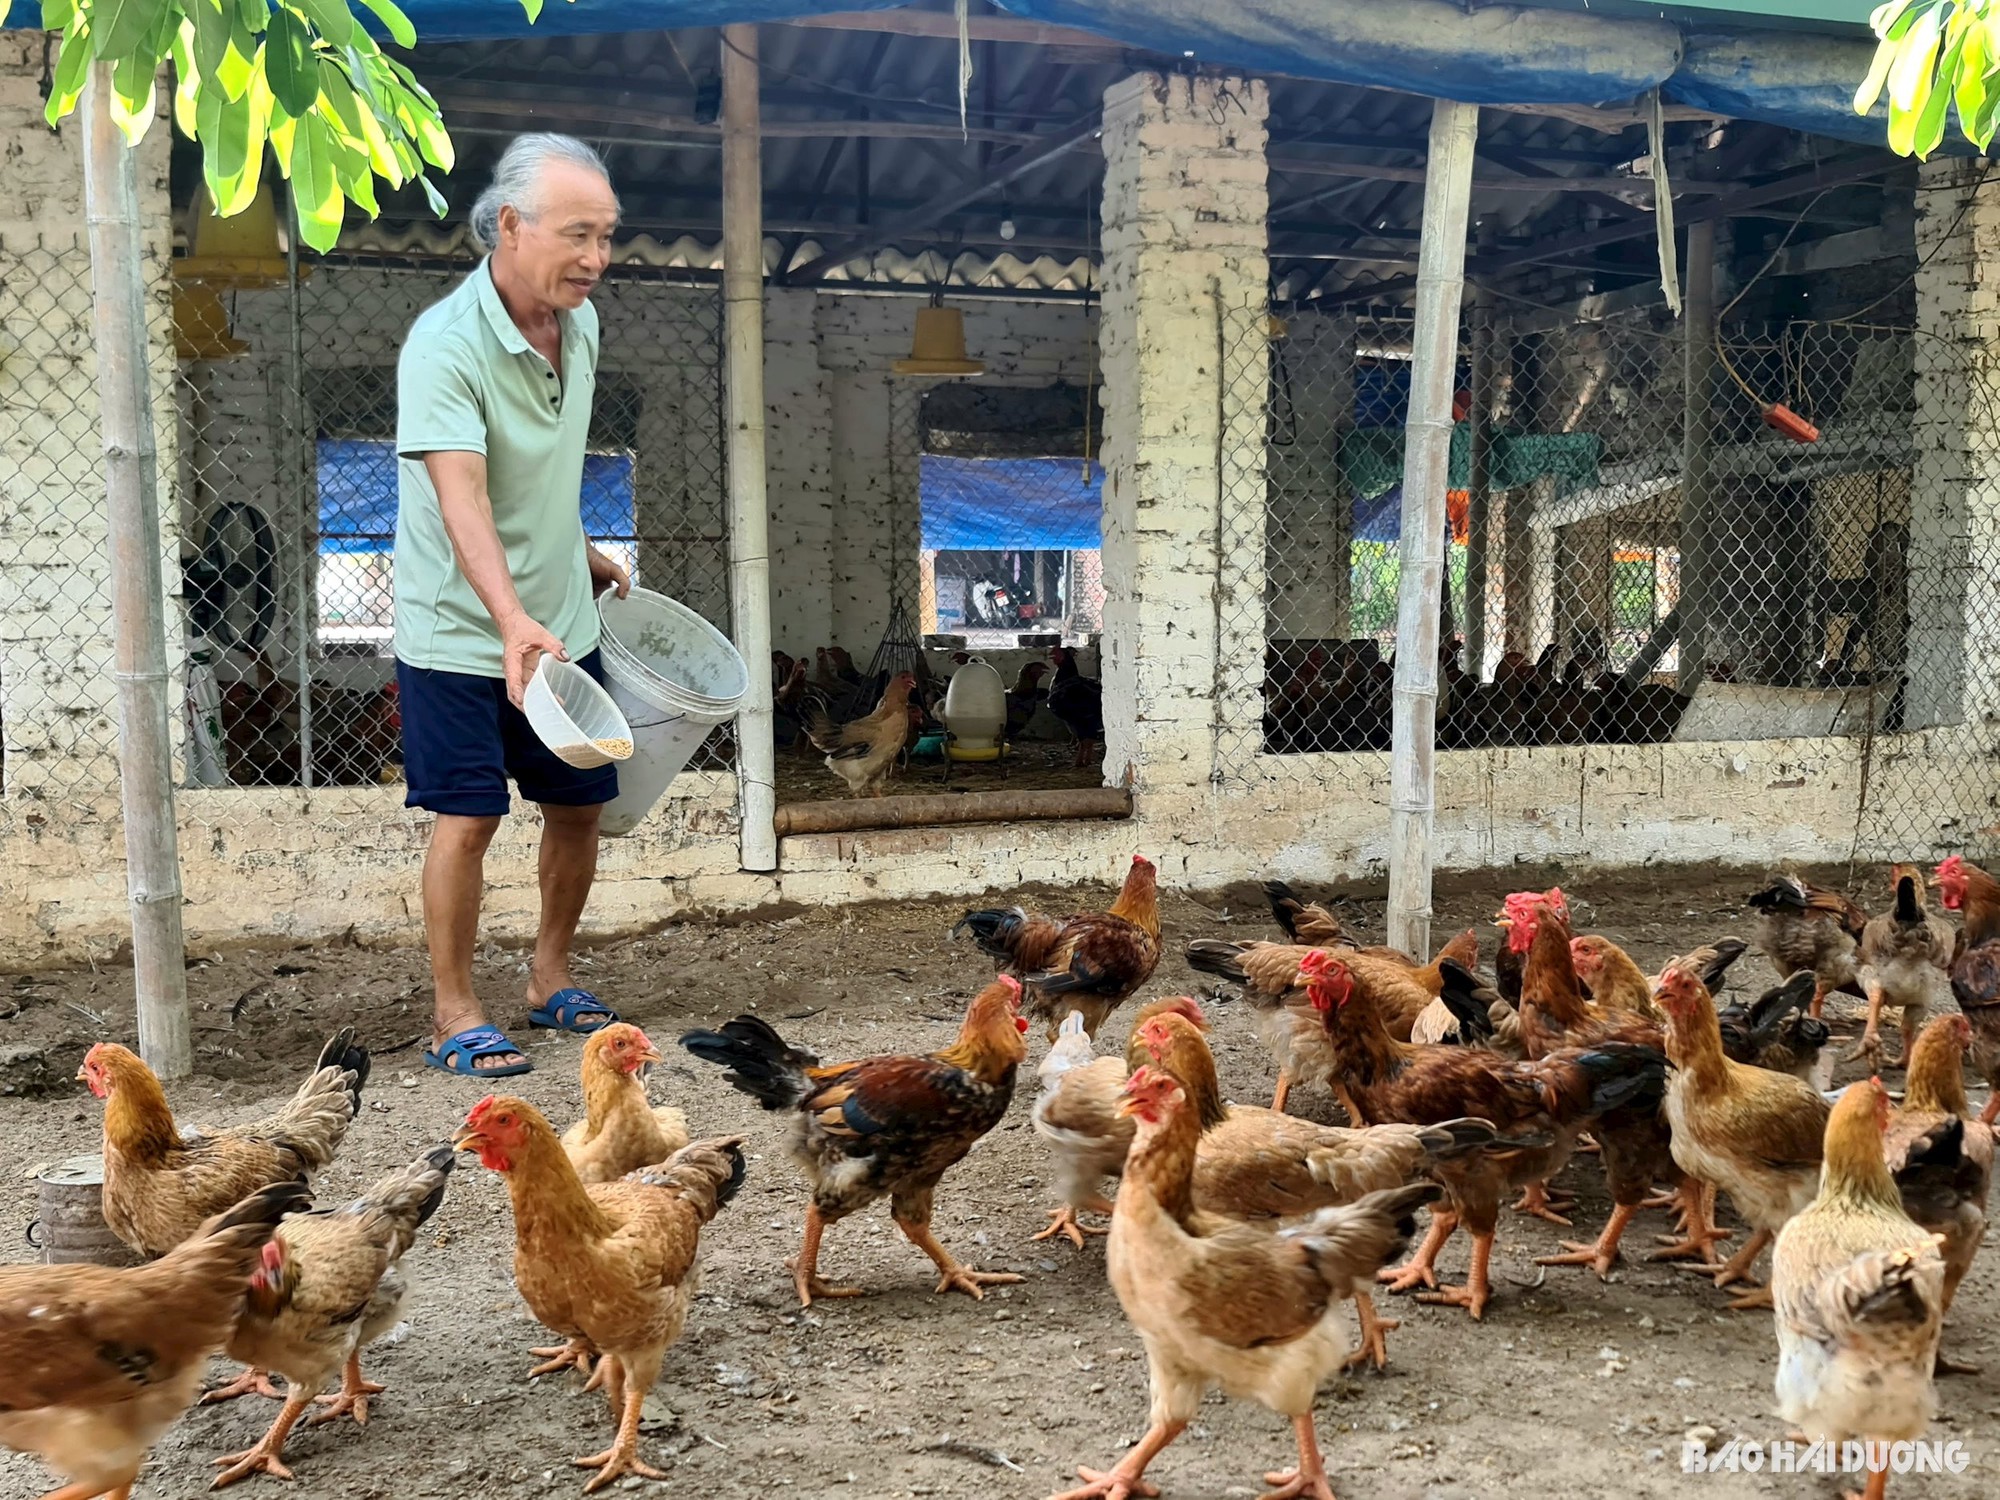 Cho gà ăn cám trộn với thảo dược quý, nông dân một xã ở Hải Dương chăm nhàn tênh mà lại có tiền - Ảnh 1.